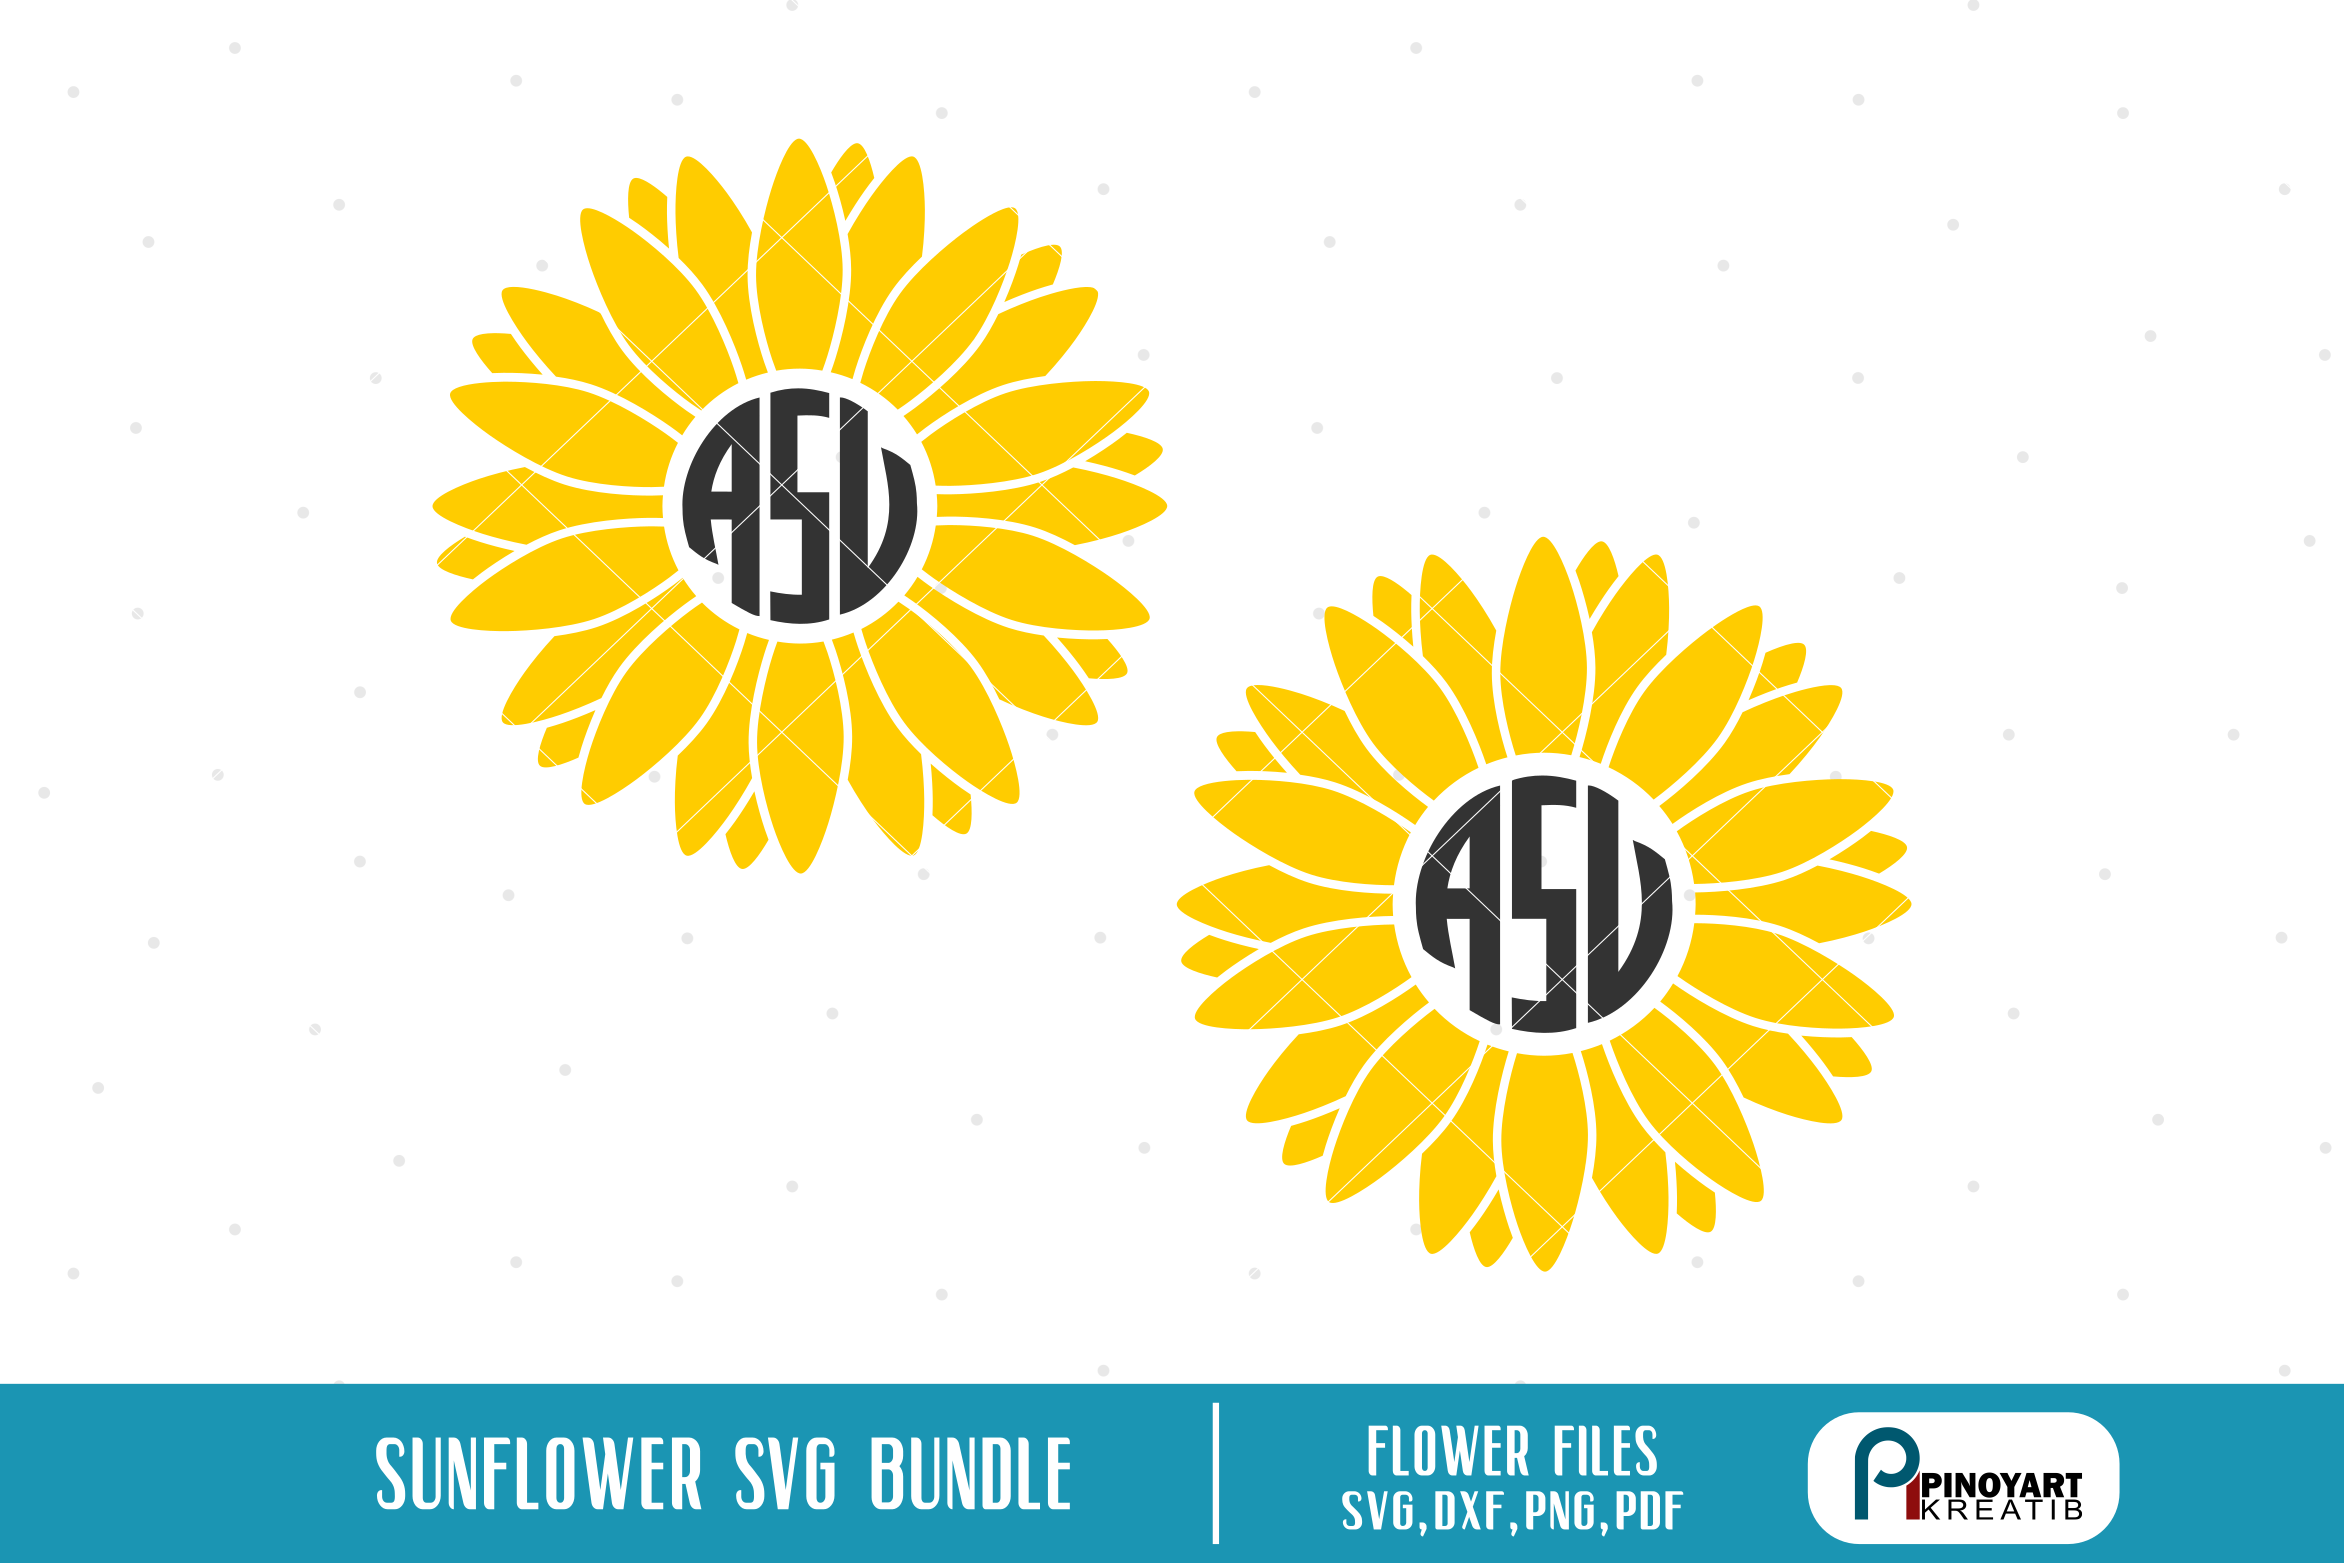 Download sunflower svg,sunflower svg file,sunflower dxf file